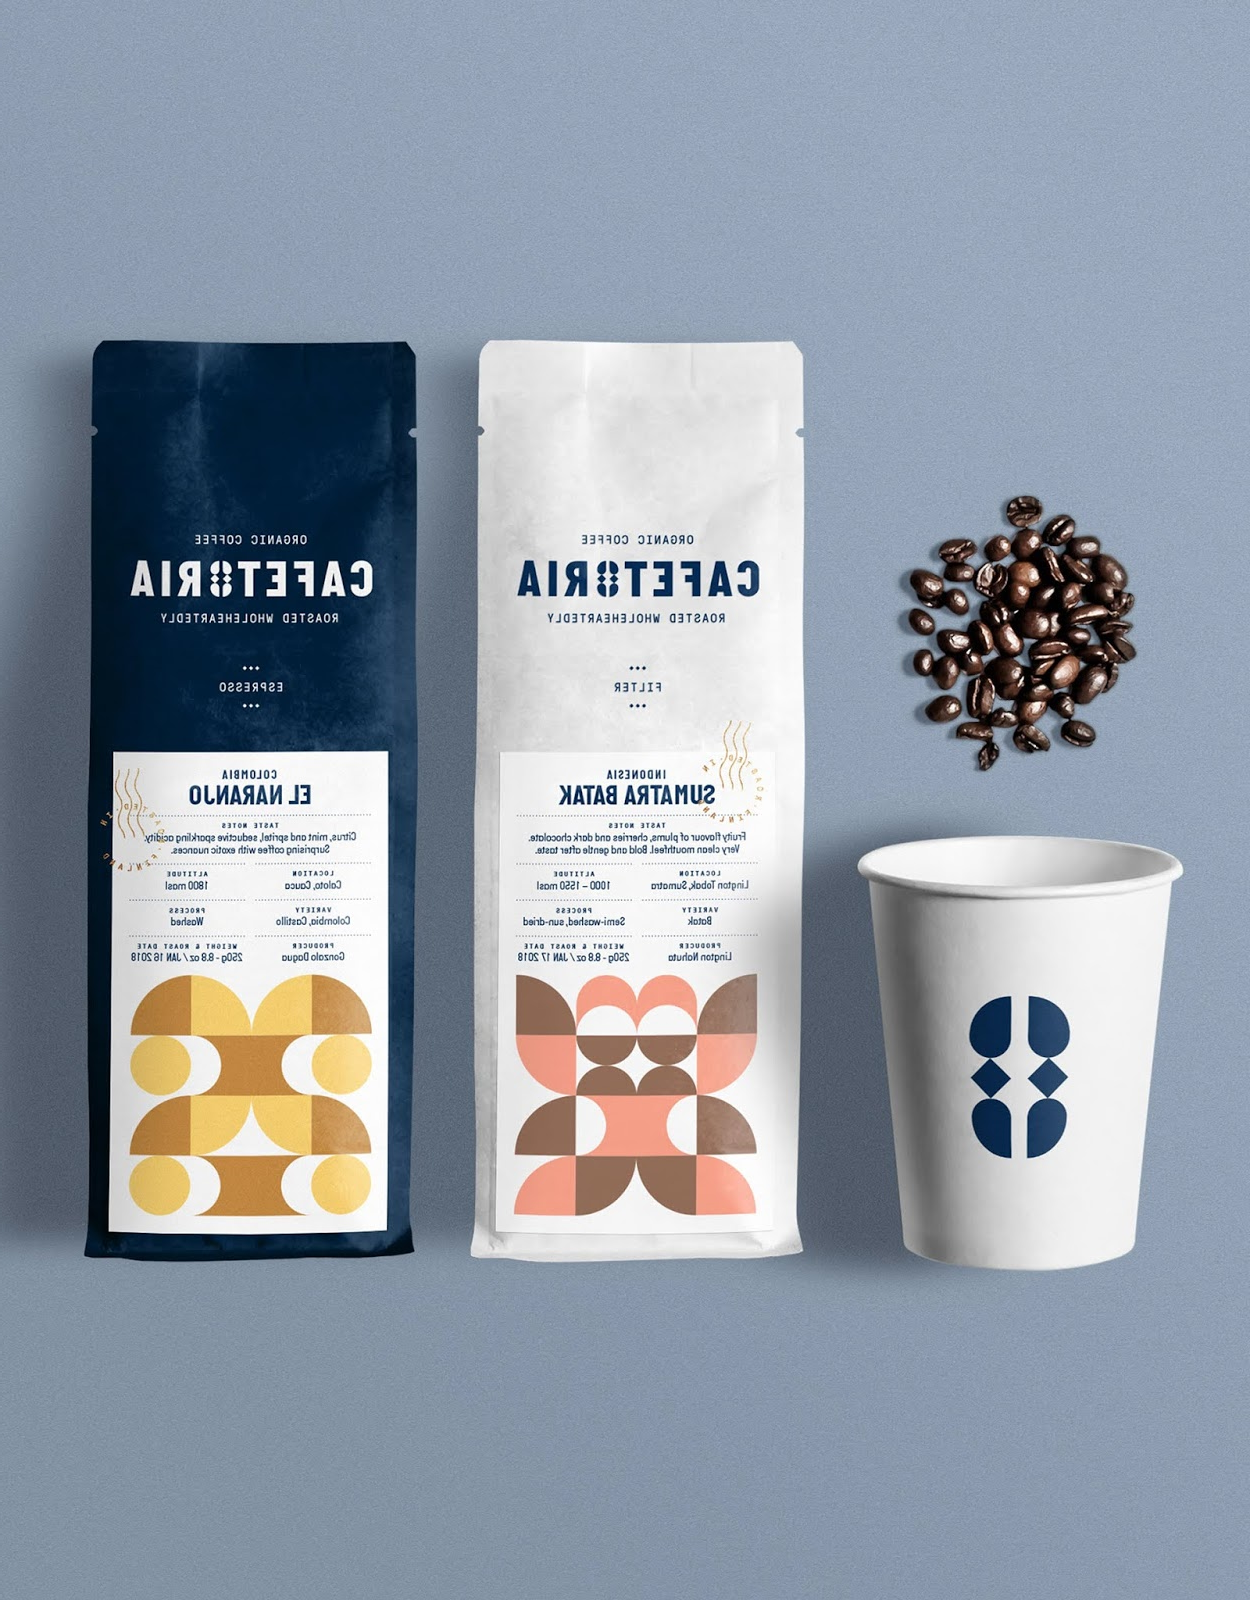 美洲小型咖啡西安欧亿体育‧（官方）平台网站
品牌包装设计